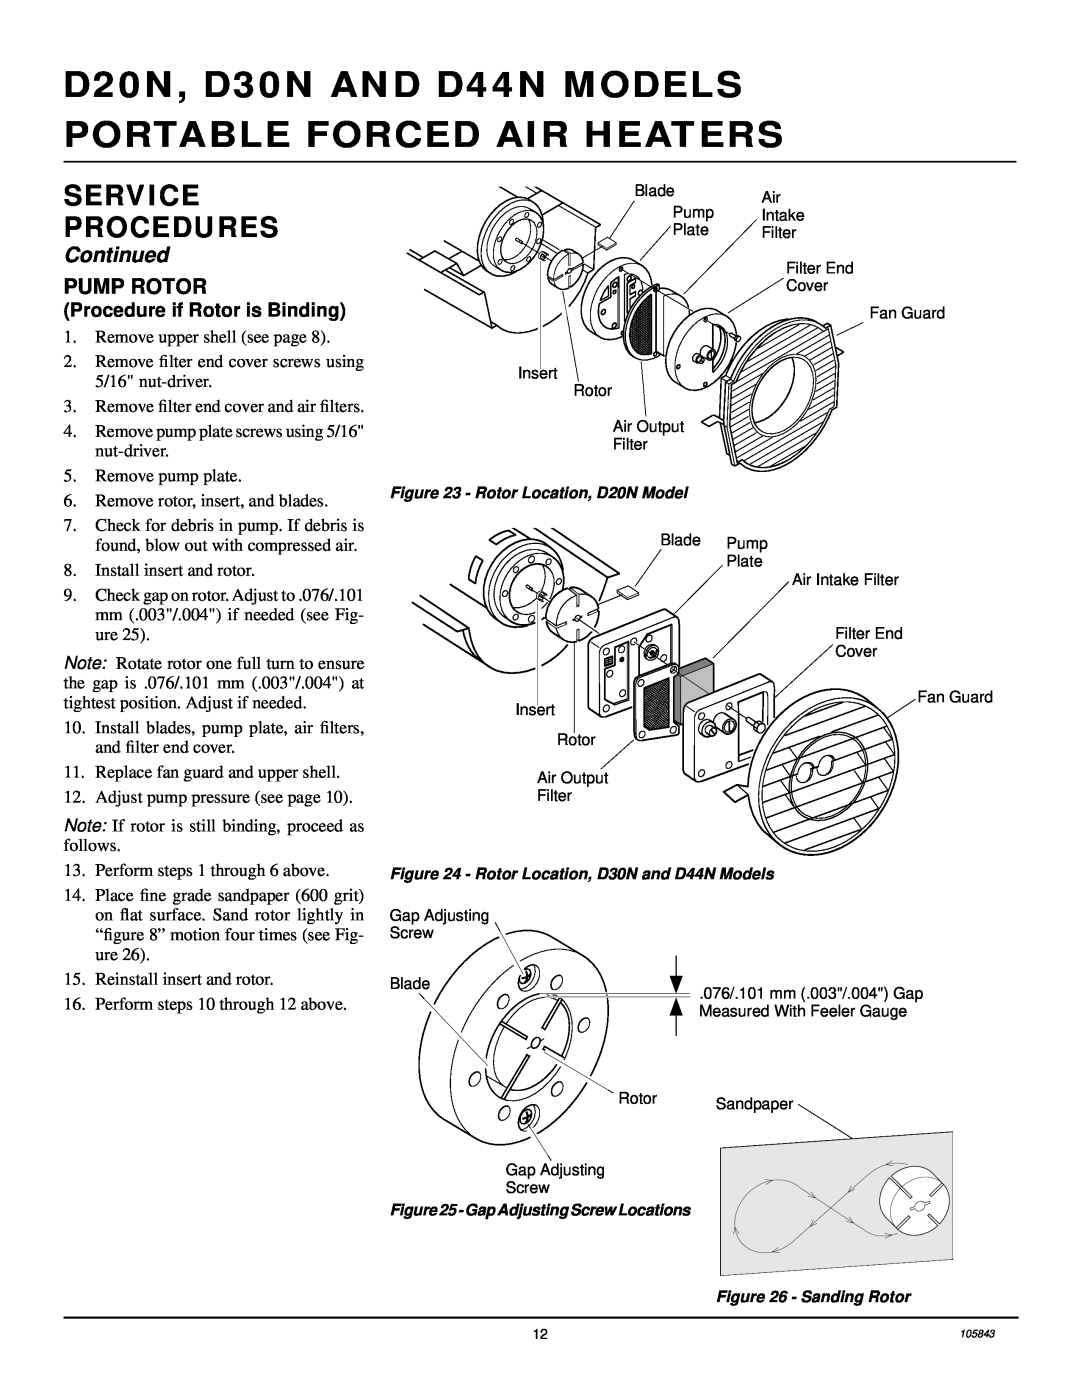 Desa D20N, D44N, D30N owner manual Pump Rotor, Service Procedures, Continued, Procedure if Rotor is Binding 